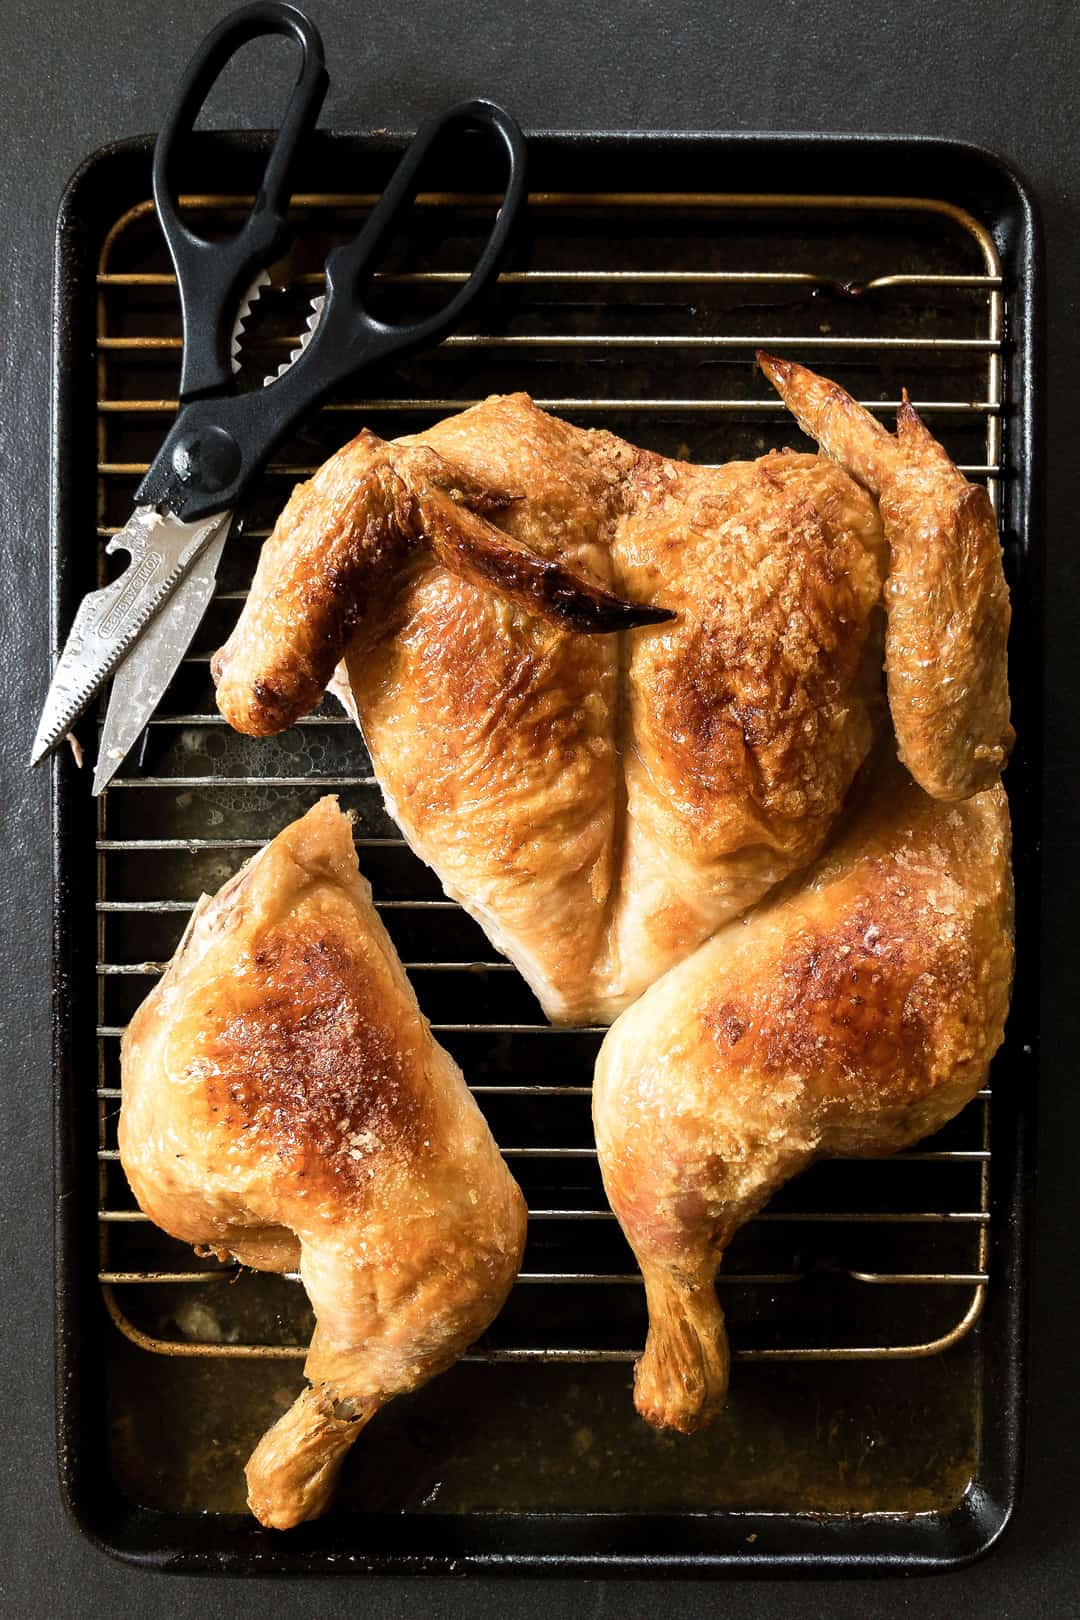 High heat roast chicken